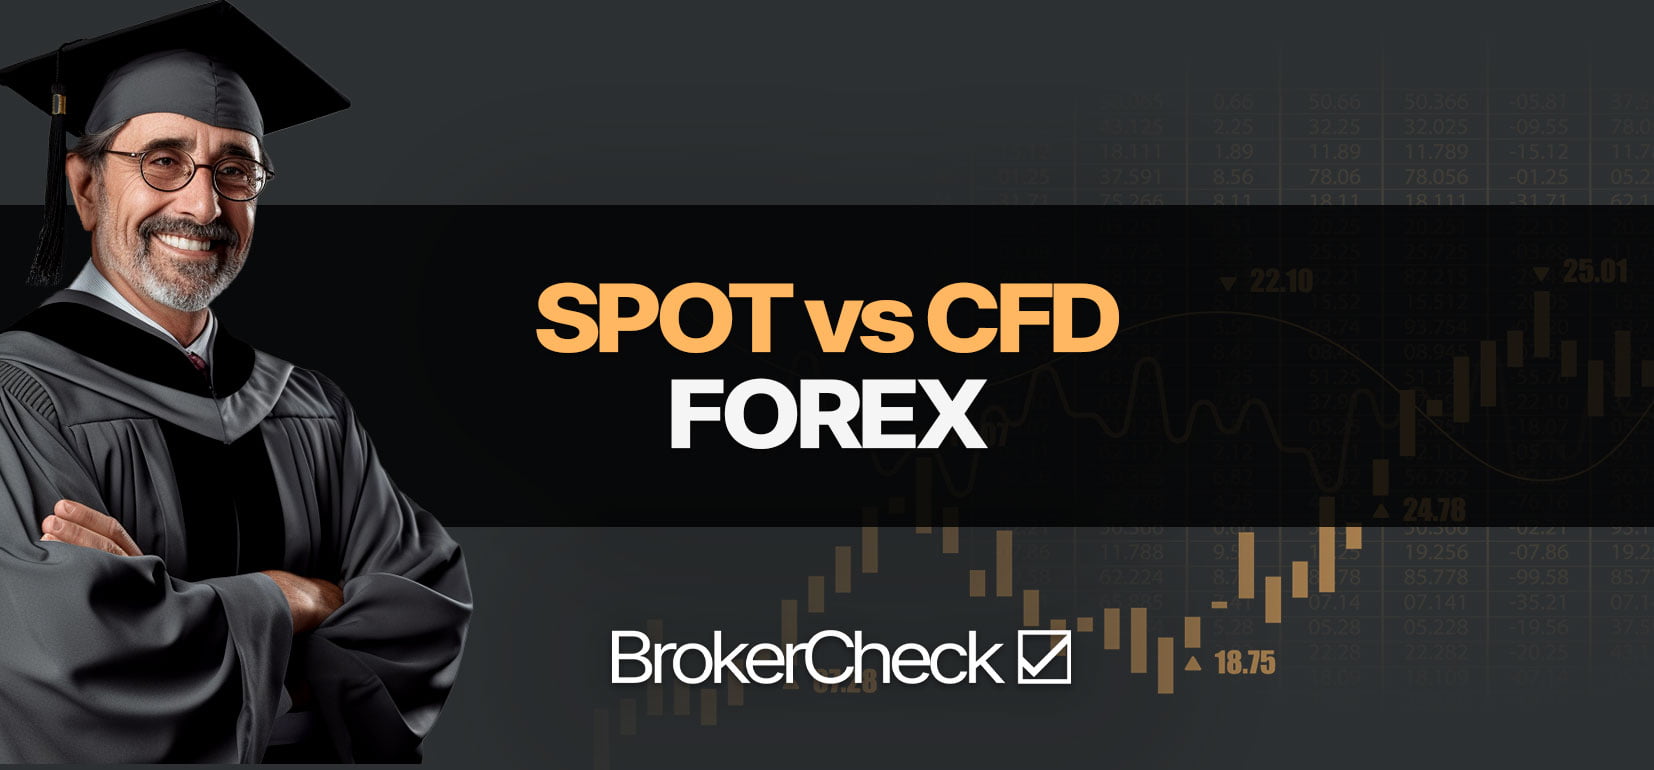 Spot Forex vs CFD Forex: Co je lepší?